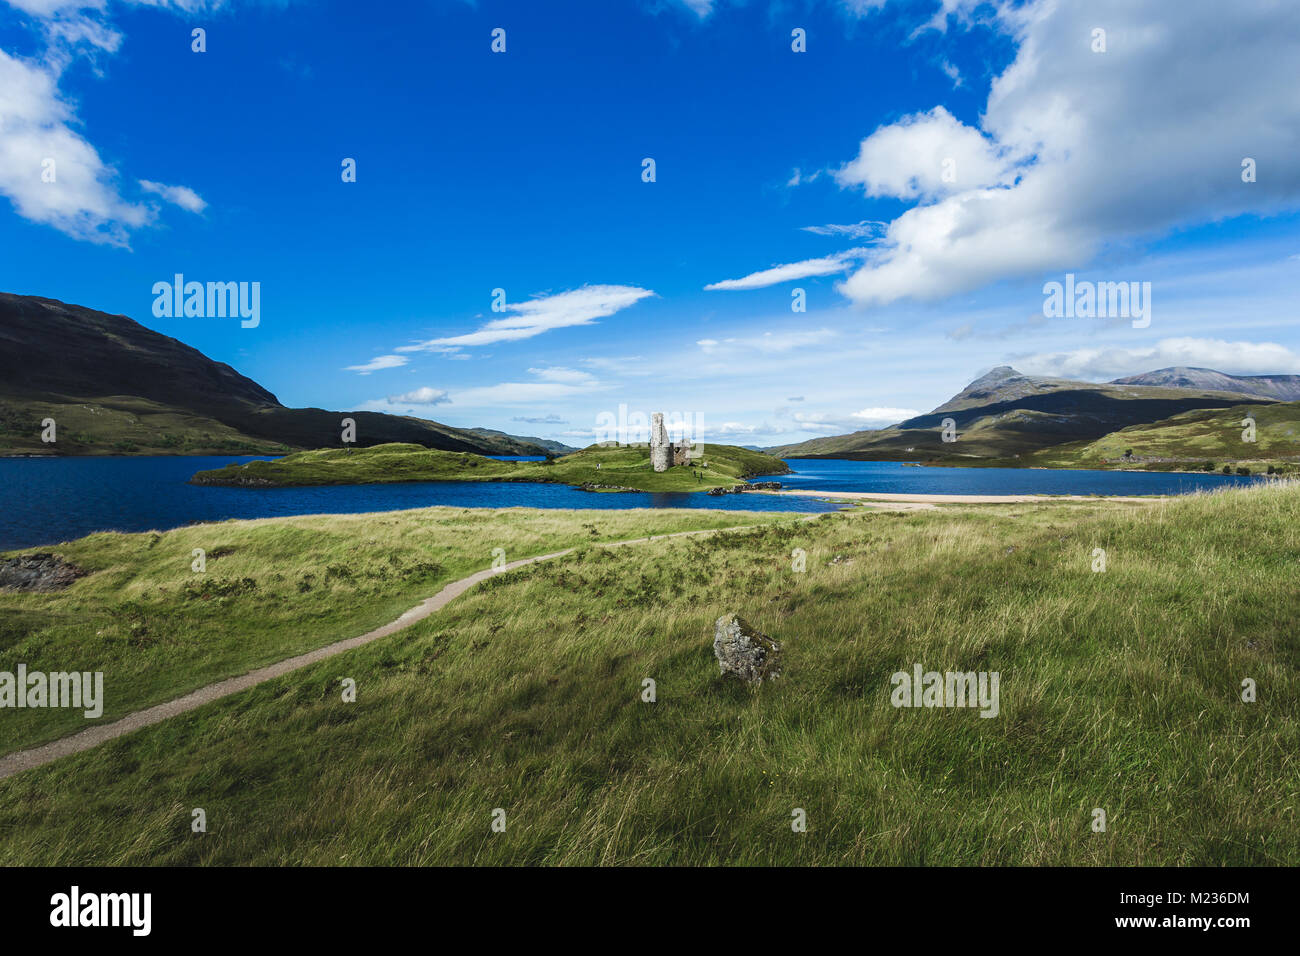 El castillo de Ardvreck a orillas de Loch Assynt, Sutherland, Highlands de Escocia Foto de stock